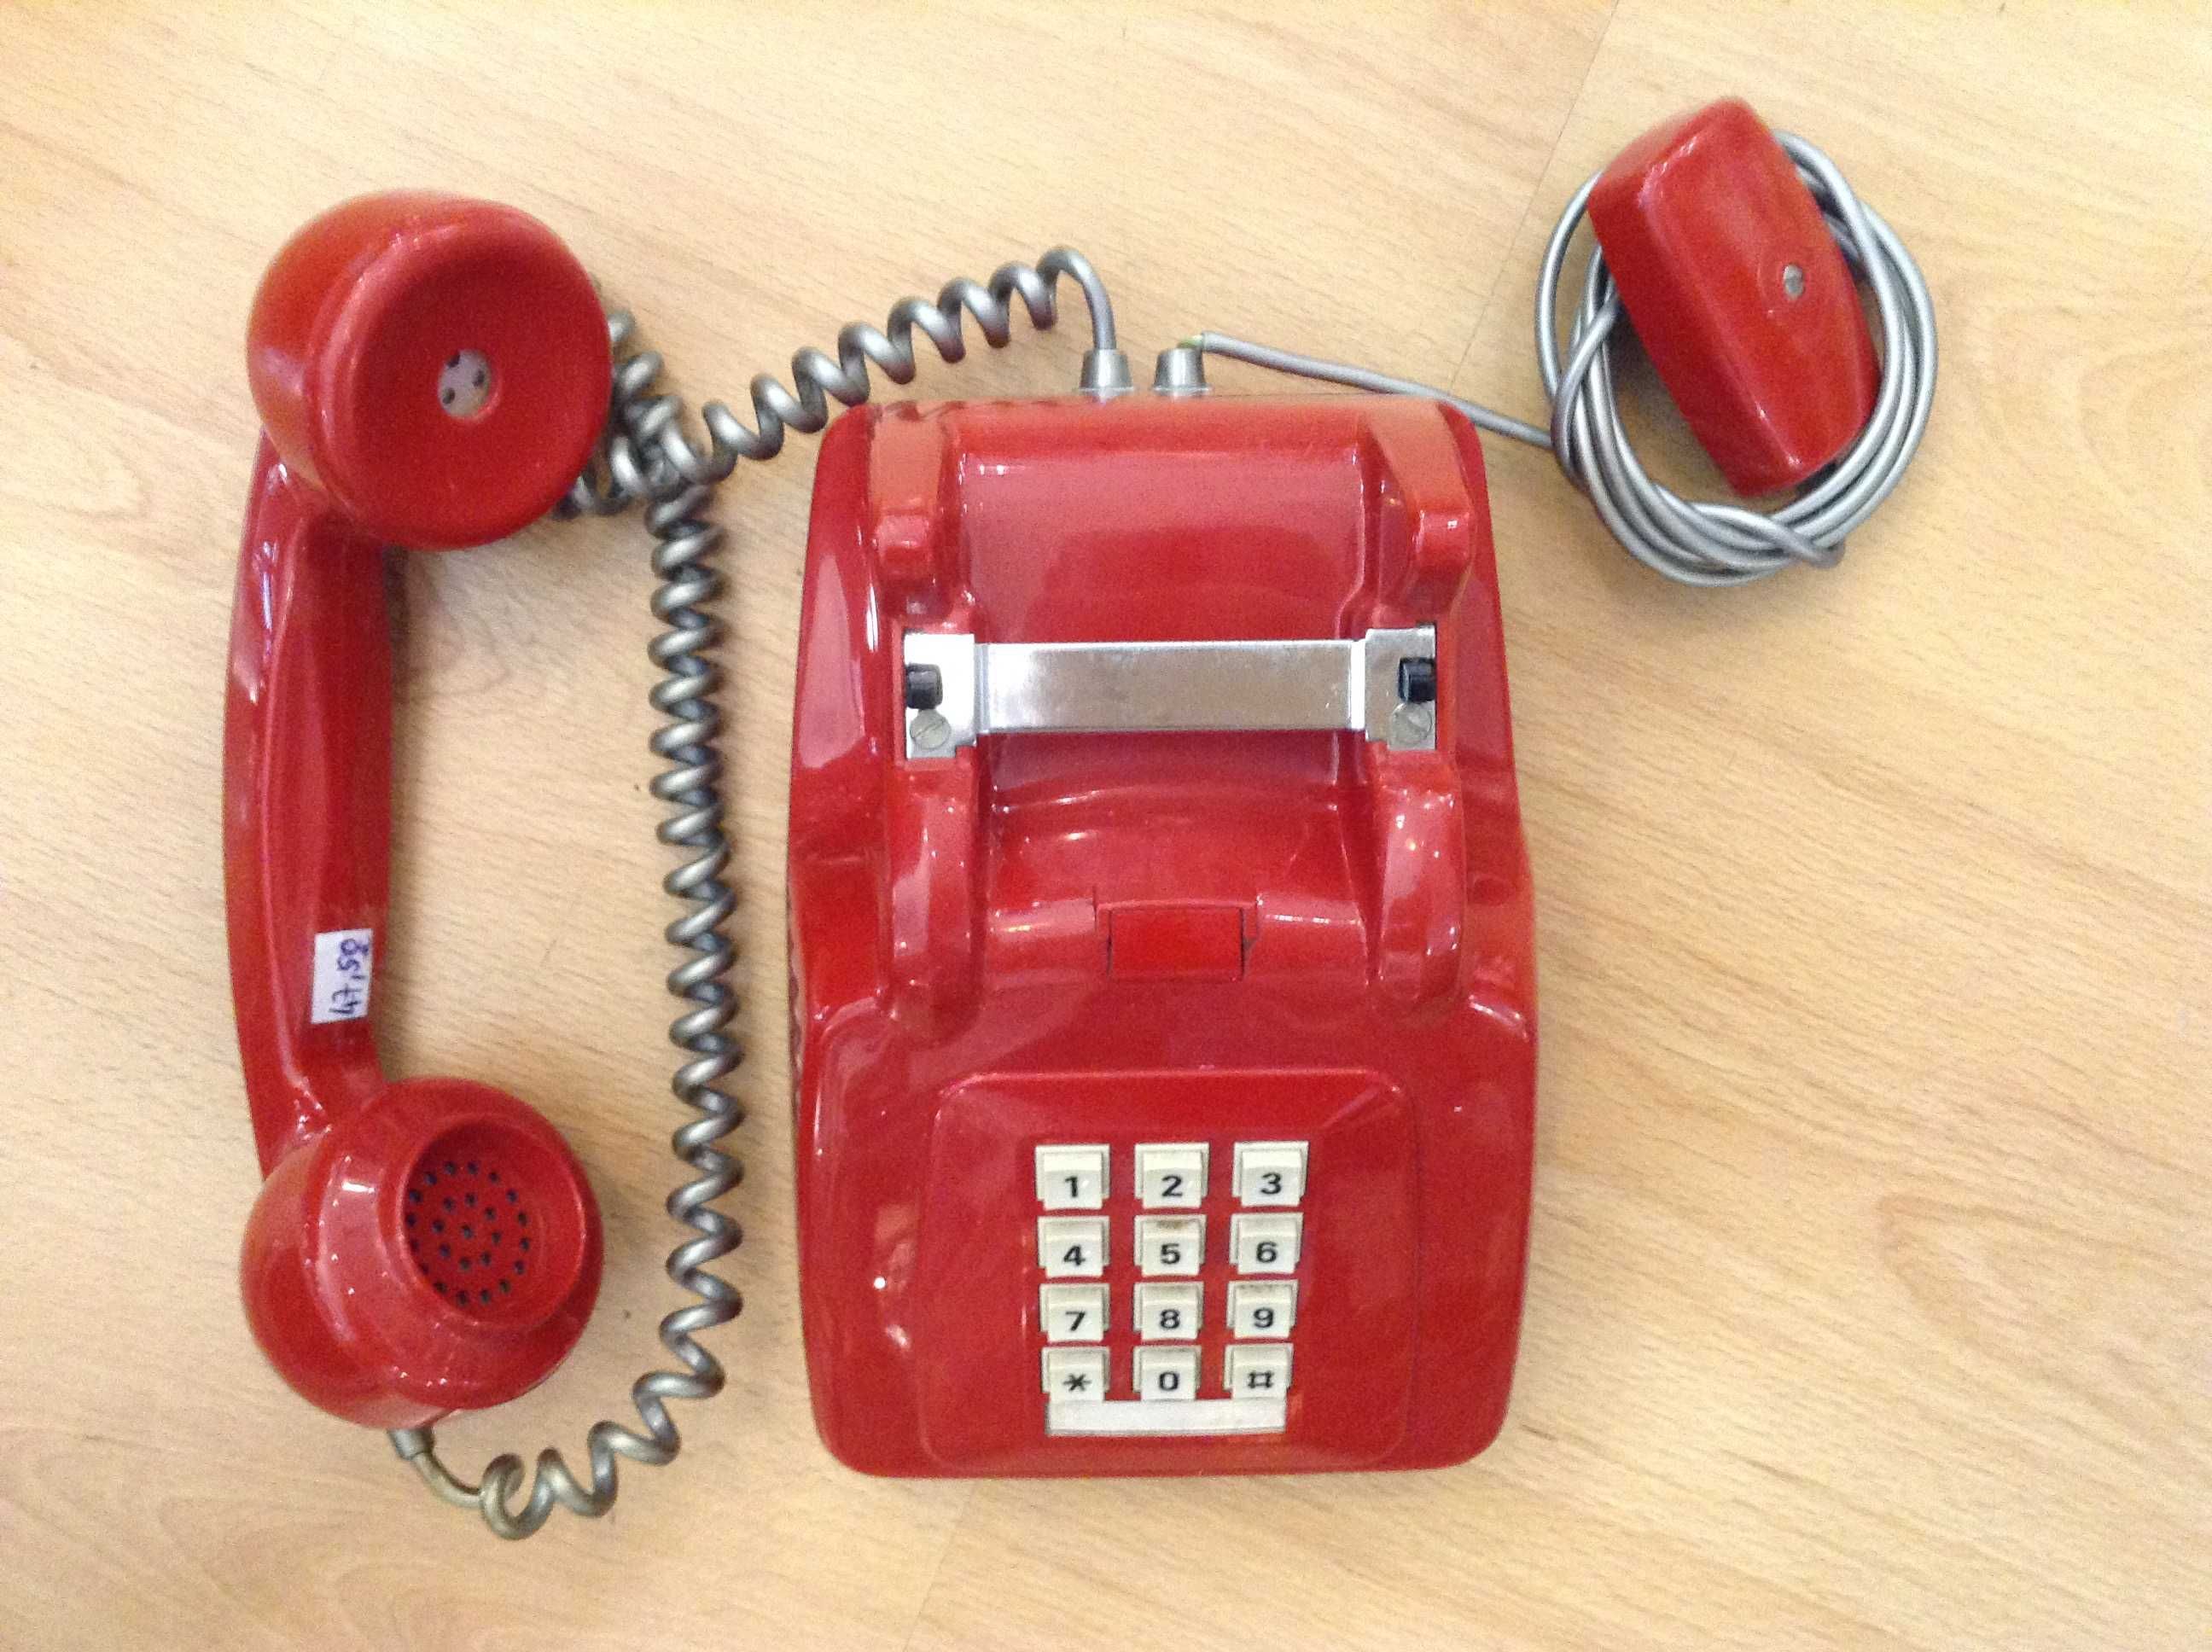 Telefone teclas Vermelho 50 € -Telefone creme de discar 18 € -Original